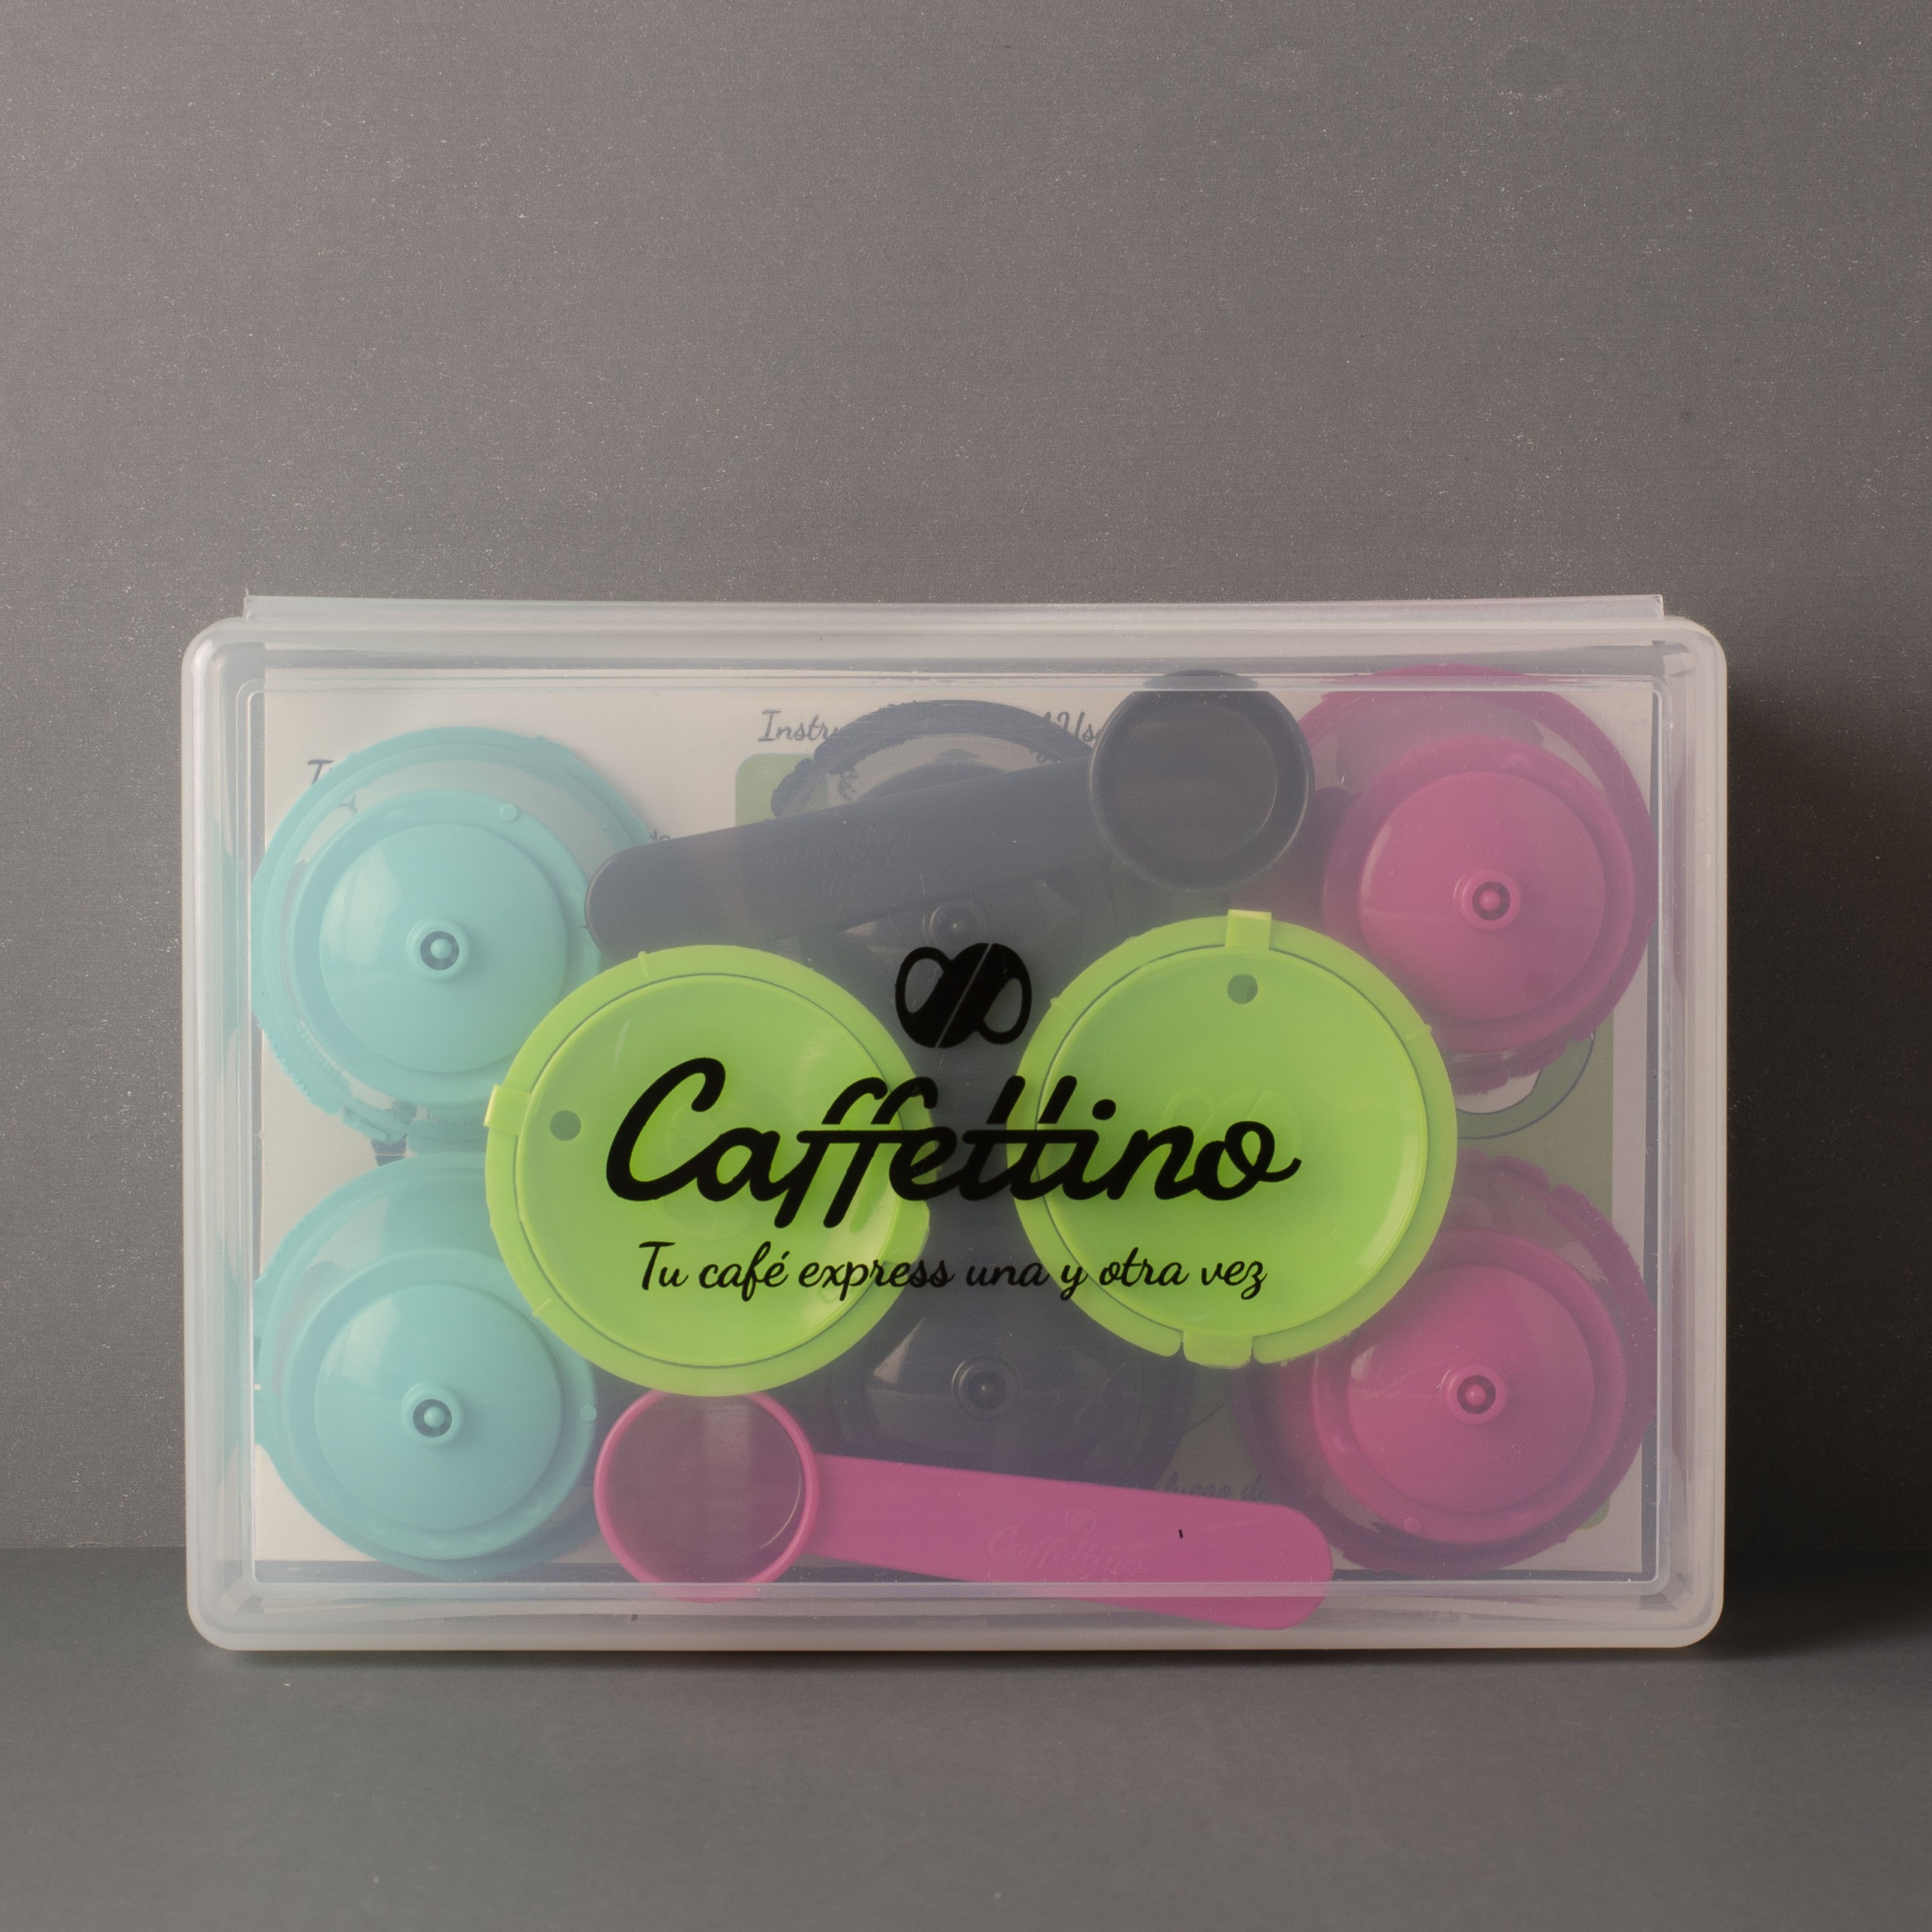 Cápsulas de café RECARGABLES ecológicas Caffettino para DOLCE